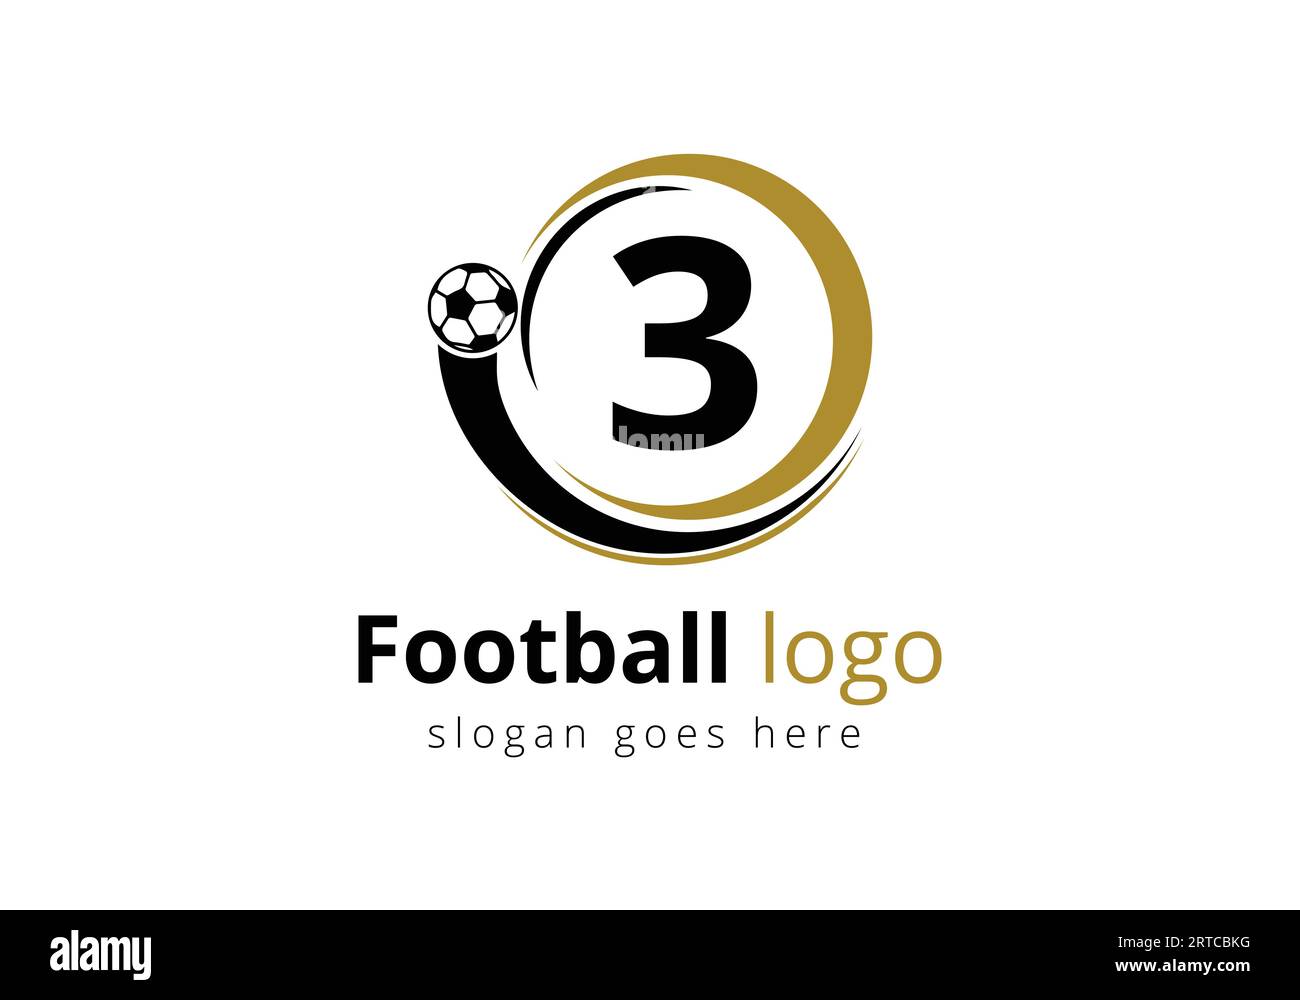 Erstes 3-Monogramm-Alphabet mit Vektorvorlage für das Fußball-Logo. Fußball-Club-Symbol. Geschäfts- und Unternehmensidentität. Stock Vektor